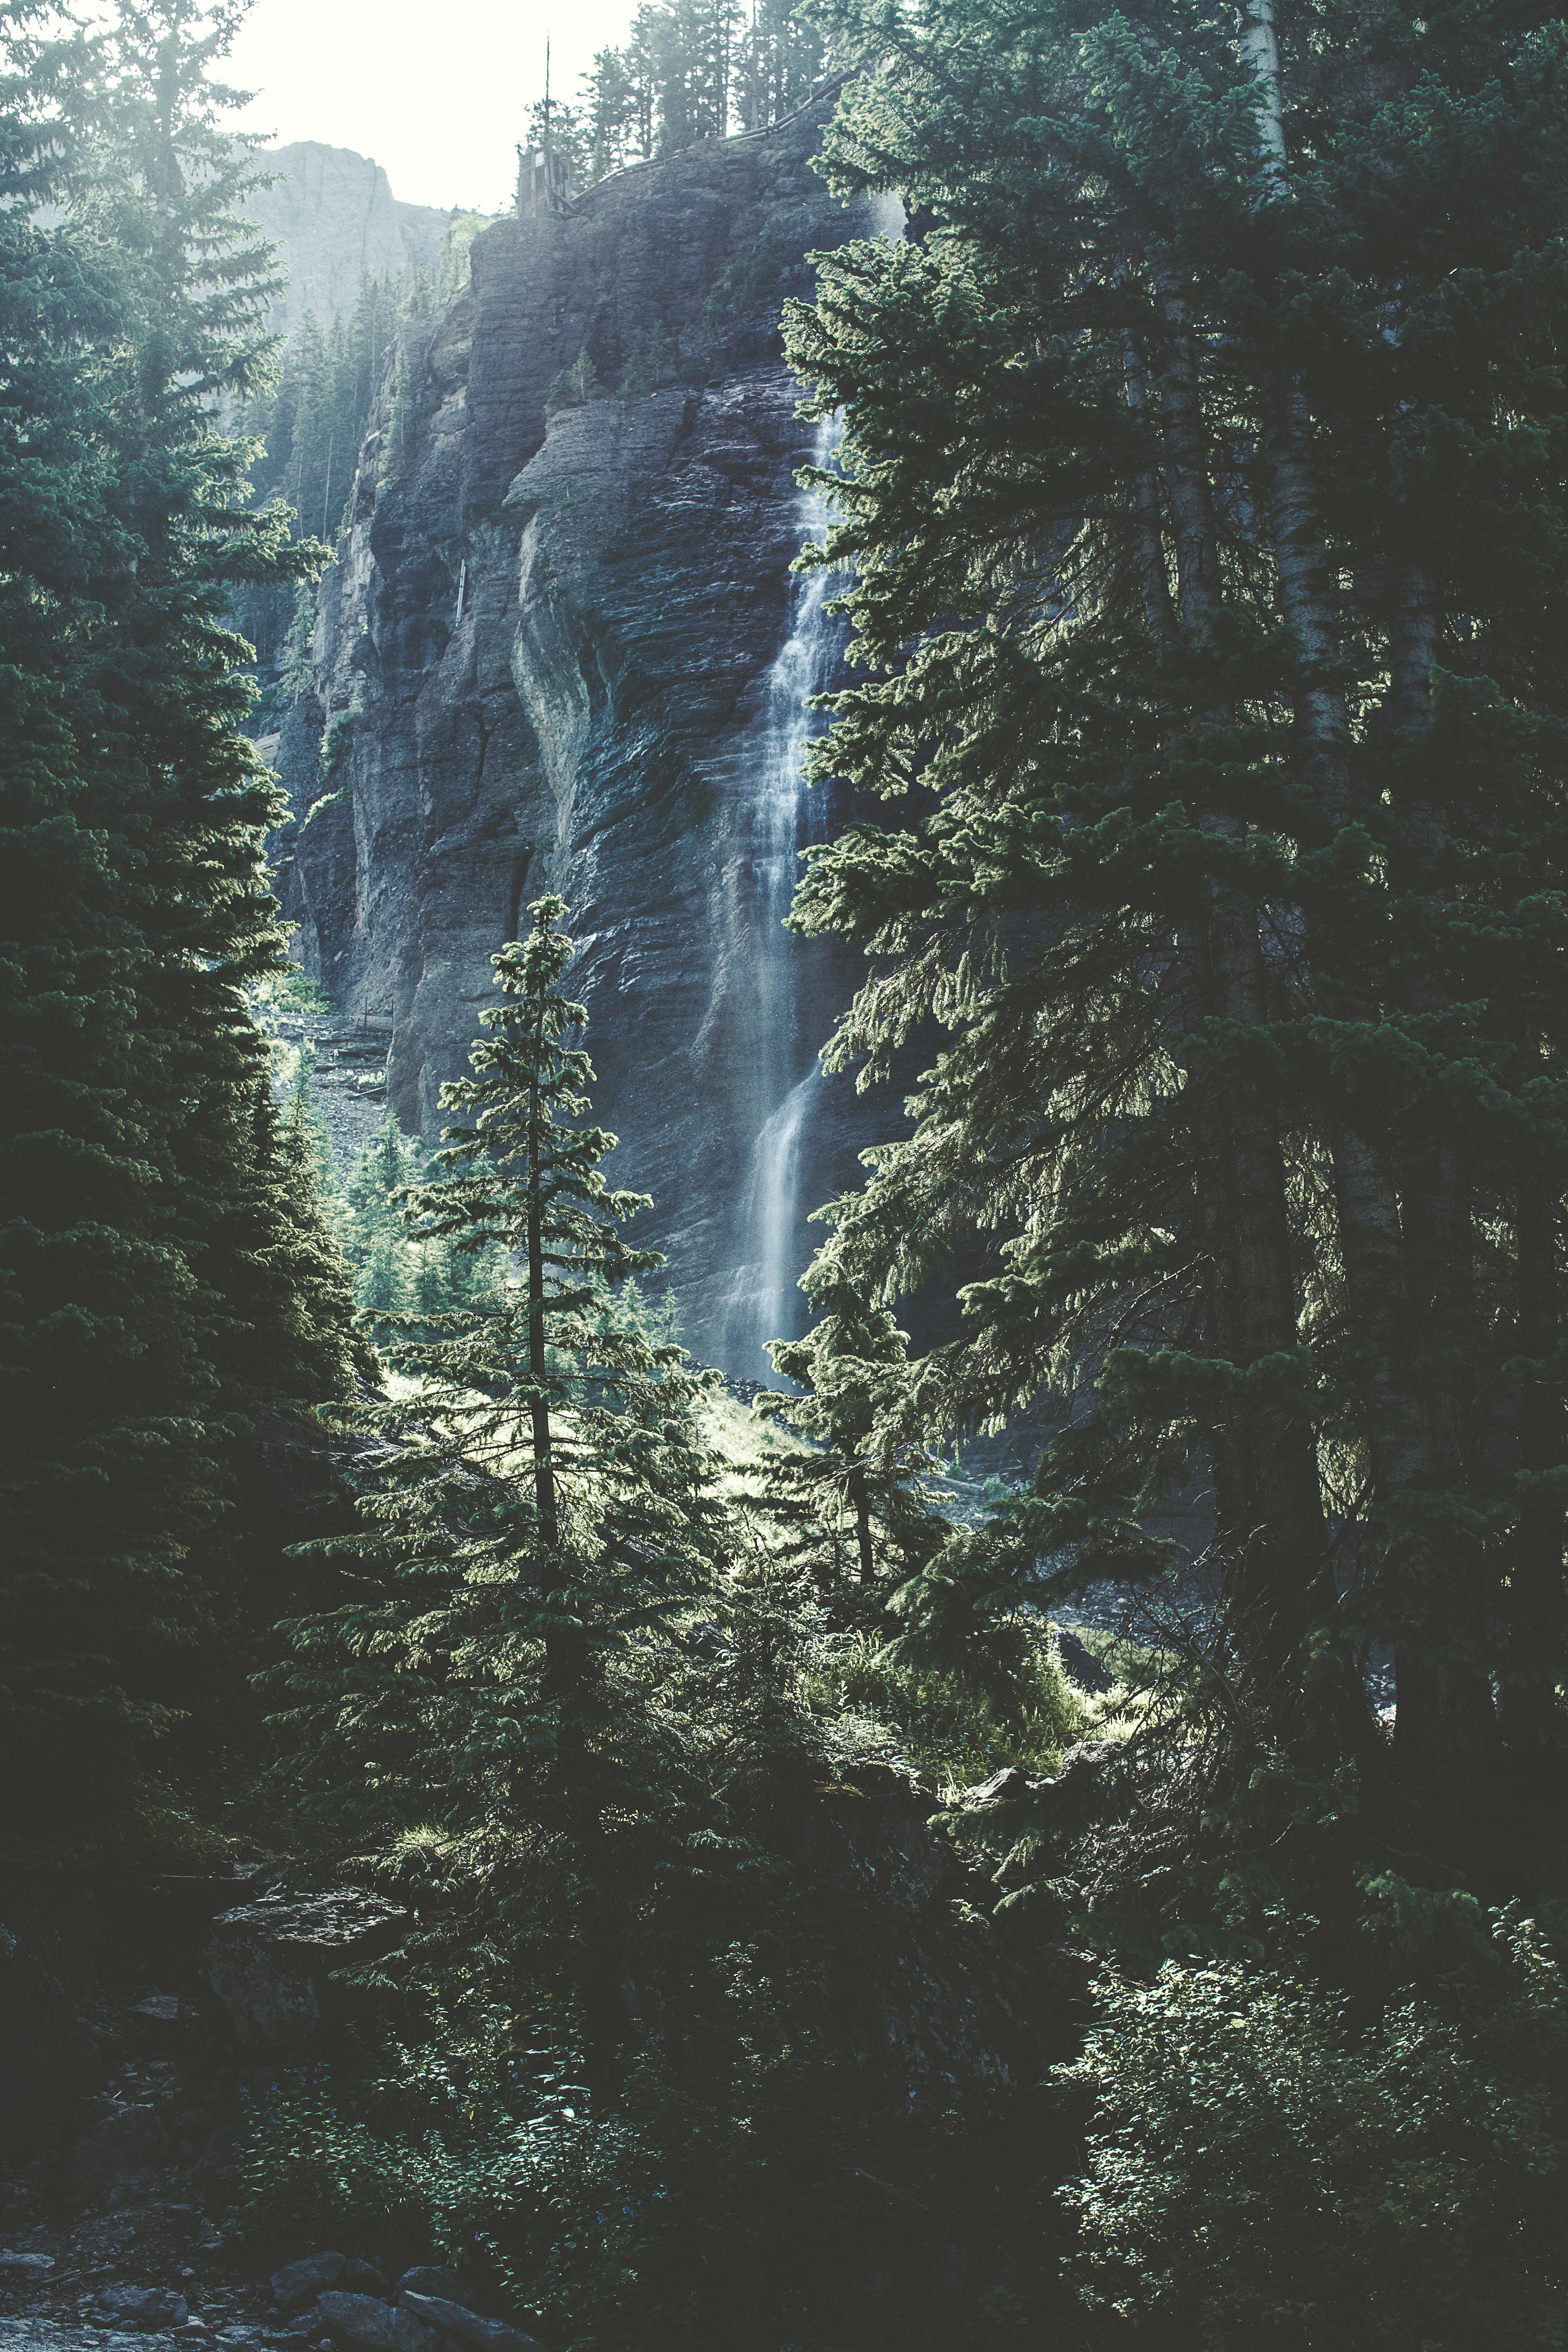 Ein grüner Wald, im Hintergrund sieht man einen kleinen Wasserfall. Das Bild wirkt sehr friendlich.